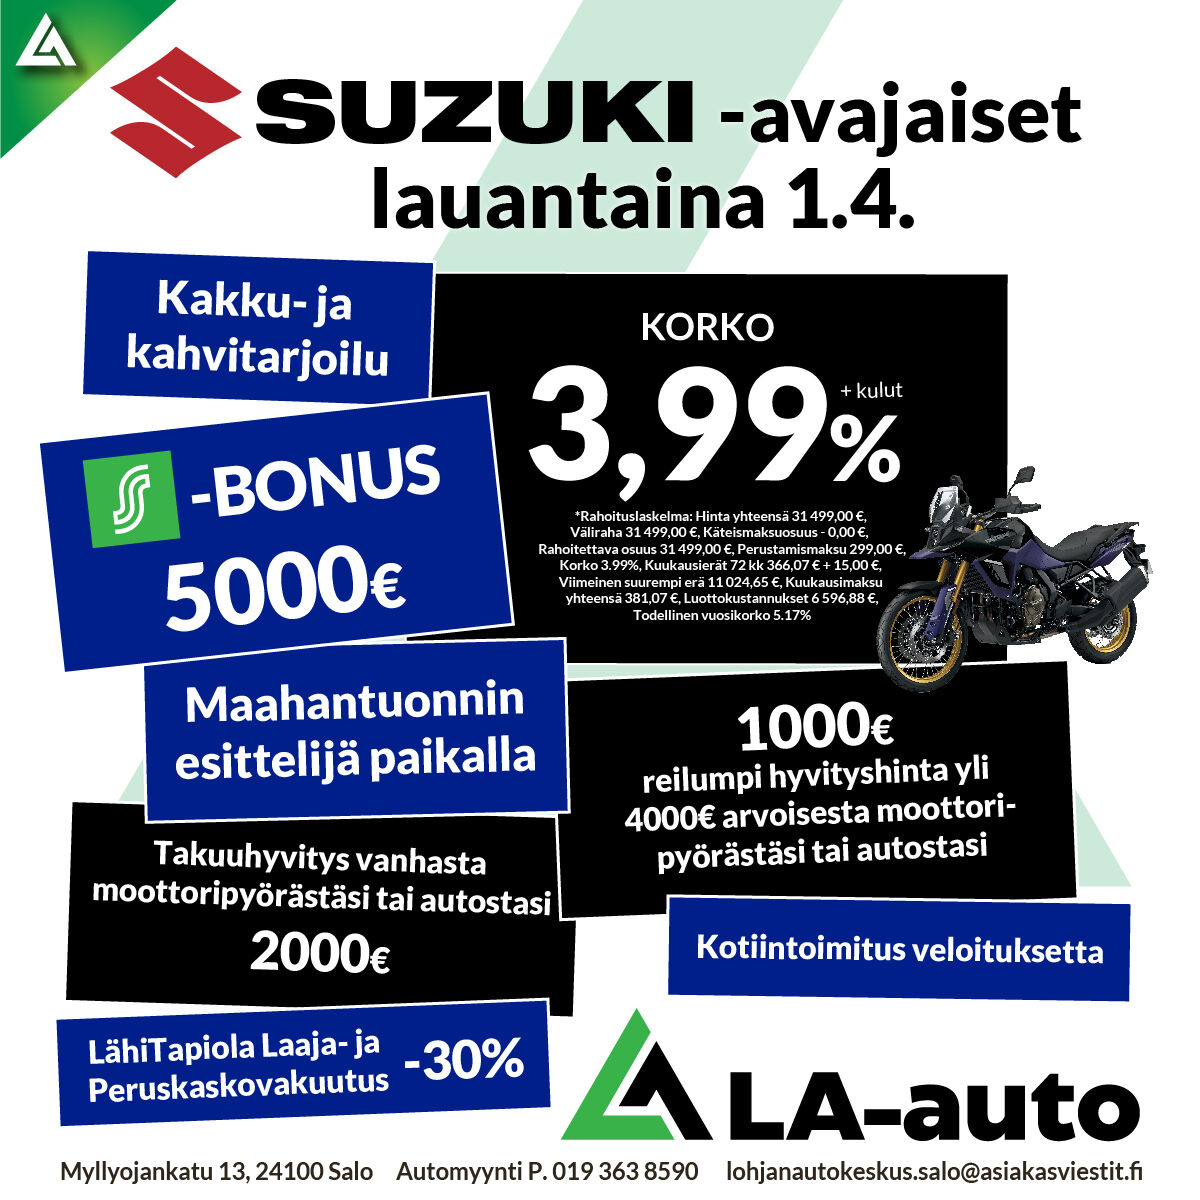 SUZUKI-avajaiset LA-autossa lauantaina 1.4.: Kakku- ja kahvitarjoilu, S-BONUS 5000€, KORKO 3,99%!